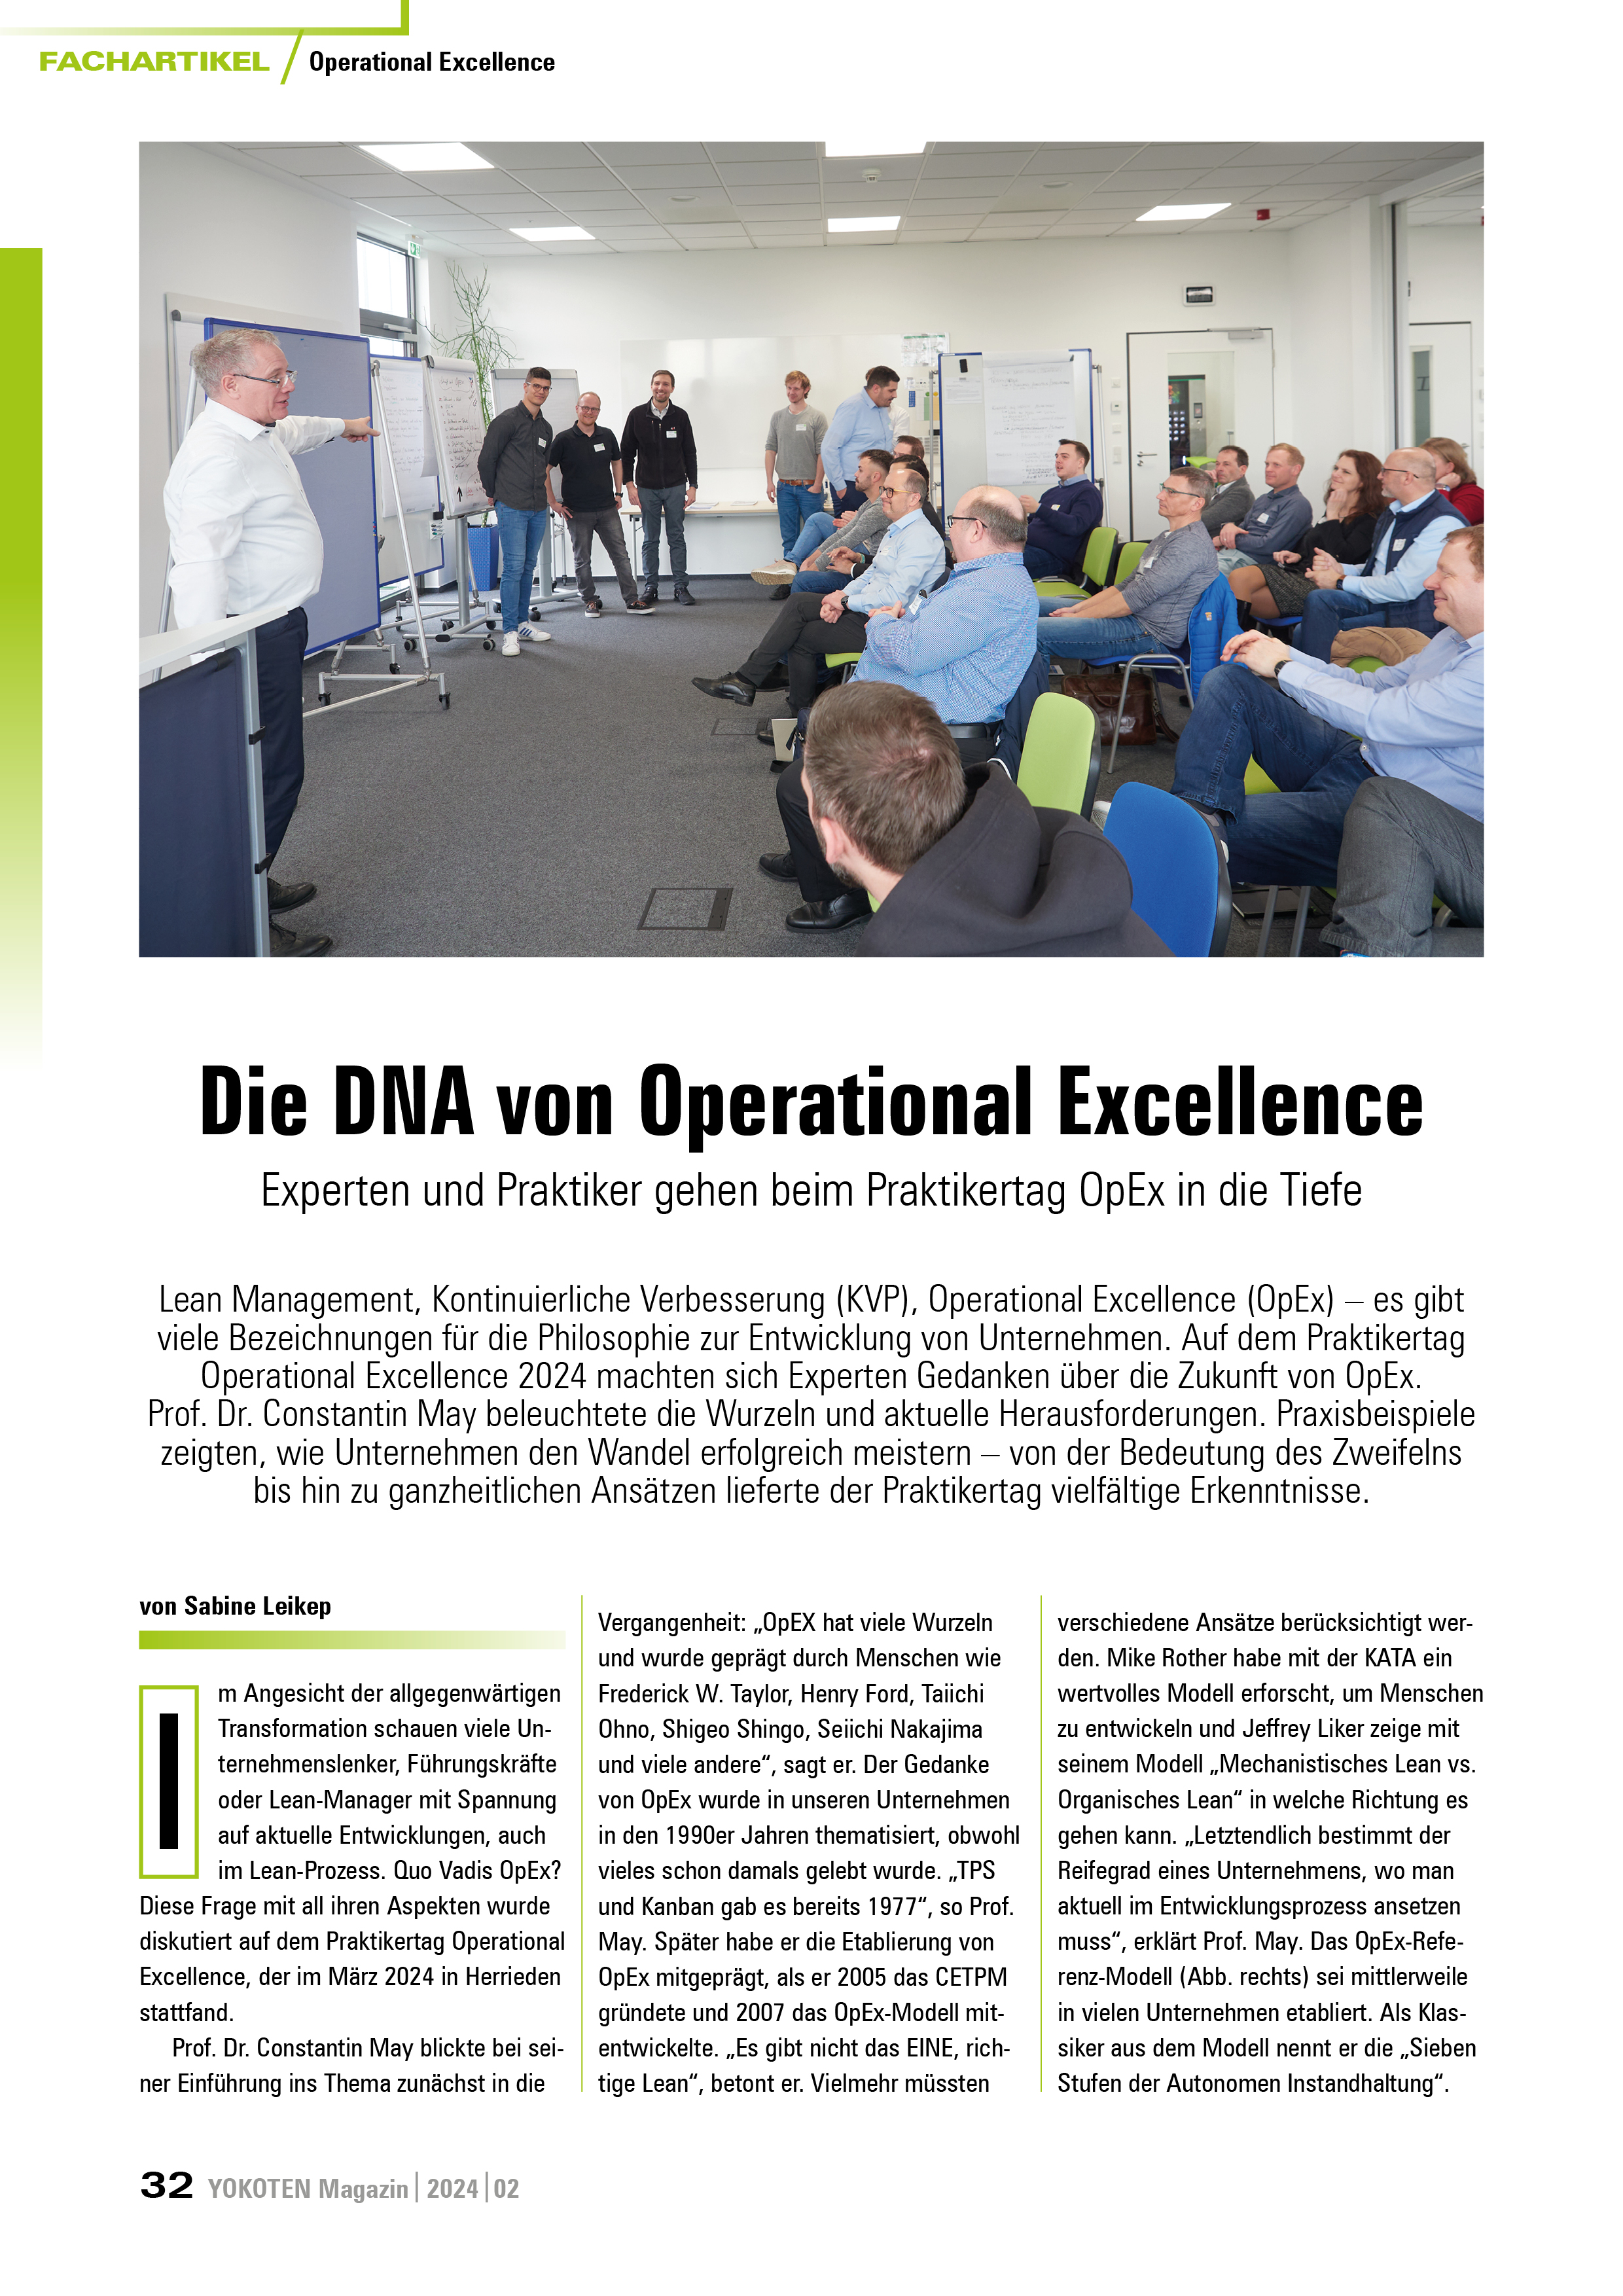 YOKOTEN-Artikel: Die DNA von Operational Excellence